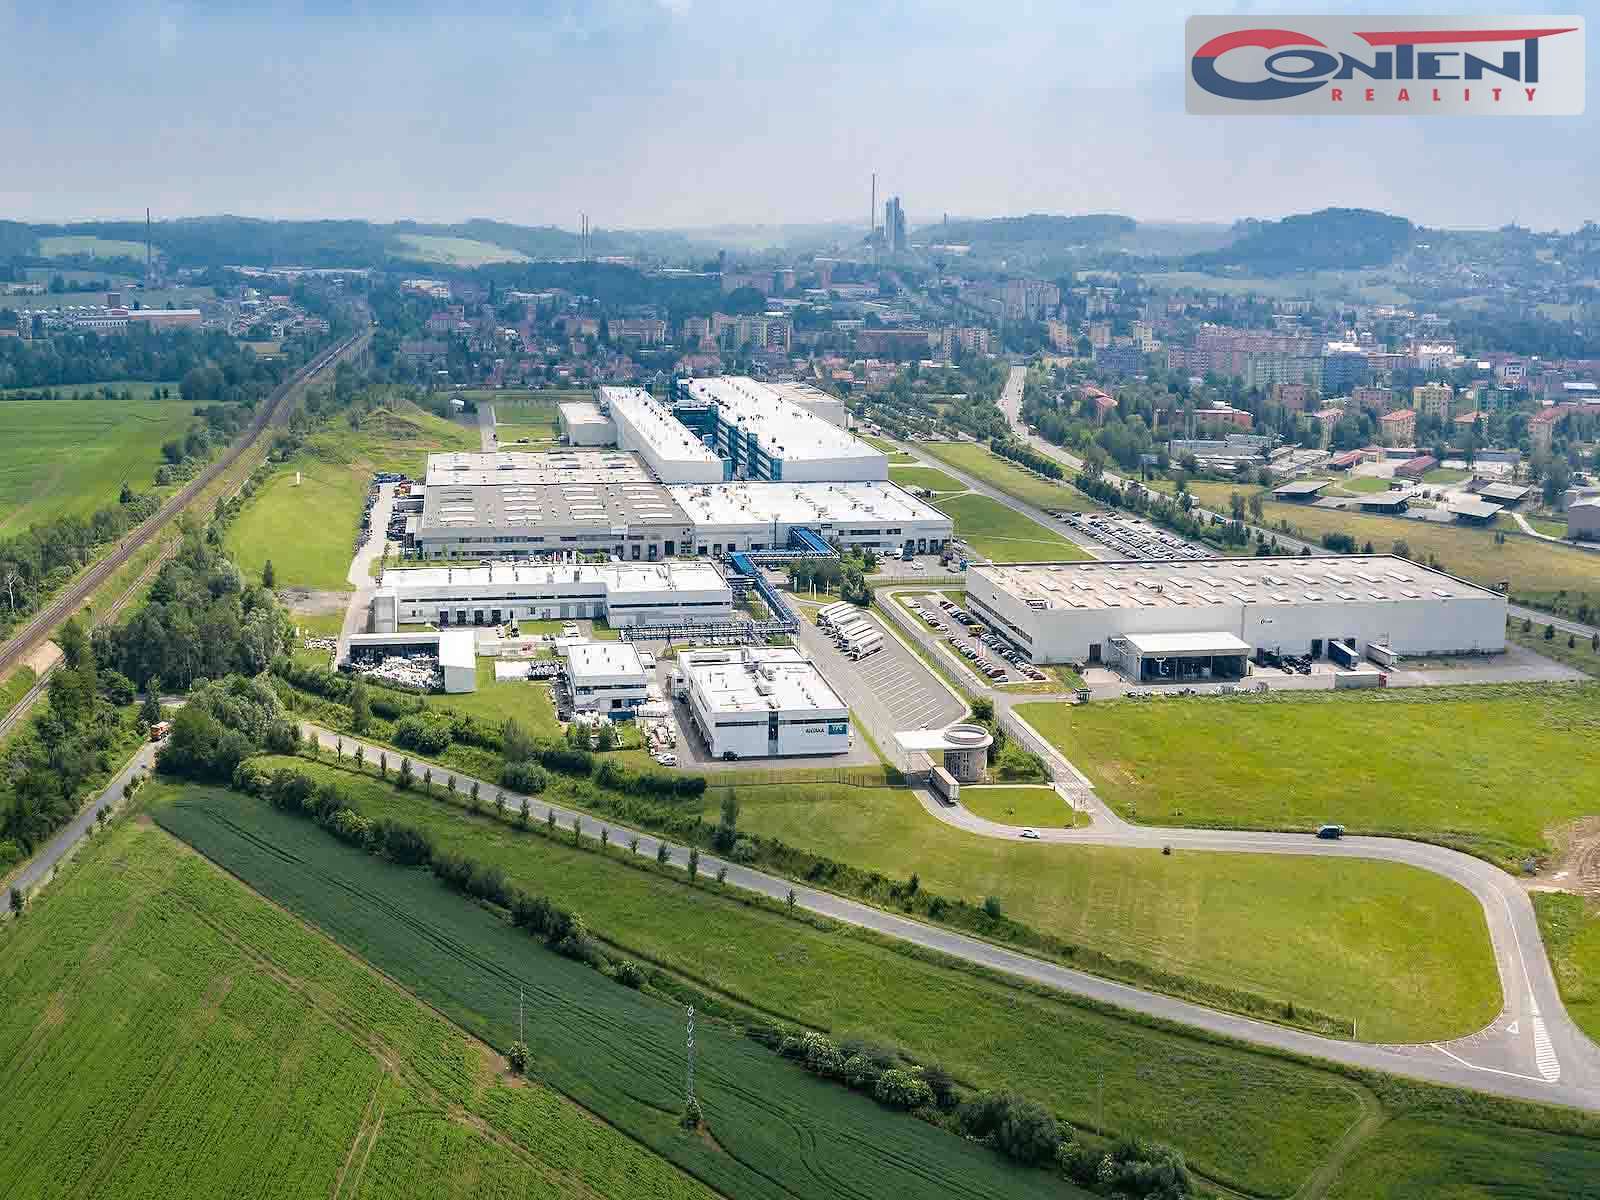 Pronájem skladu nebo výrobních prostor 1.579 m², Hranice, D1 Olomouc